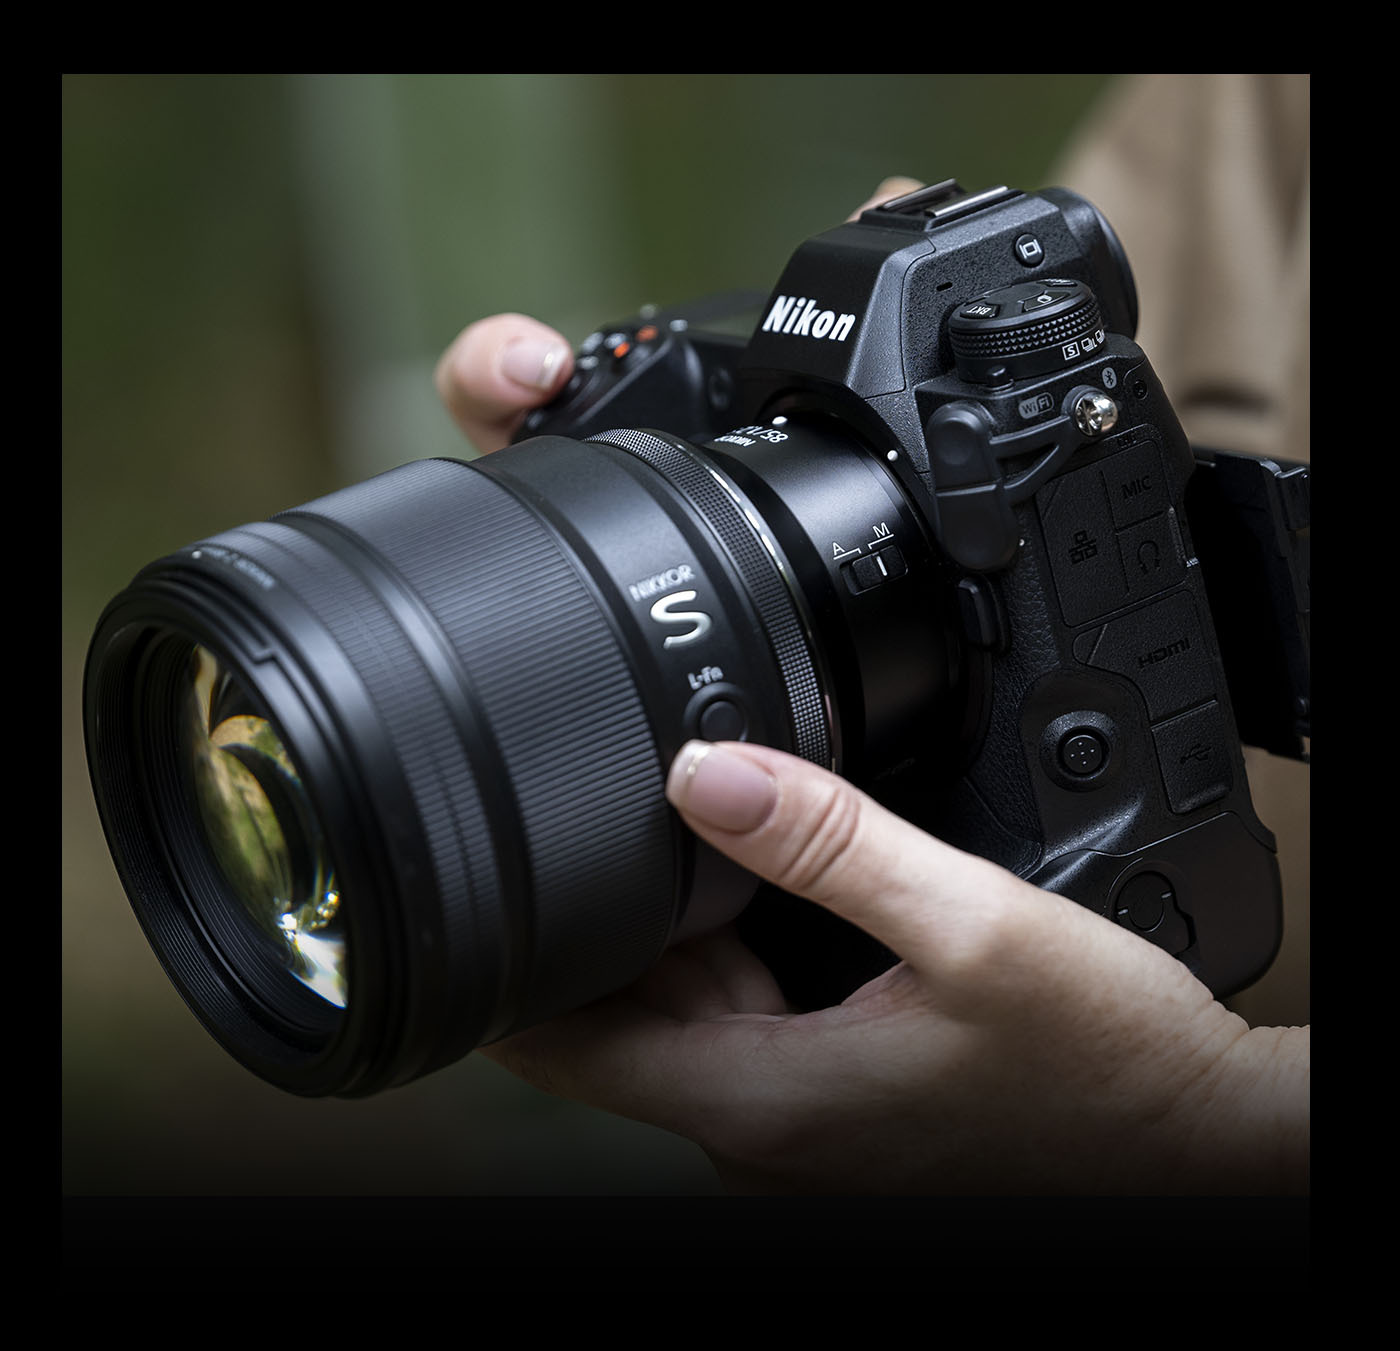 L-Fn button | Nikon Cameras, Lenses & Accessories